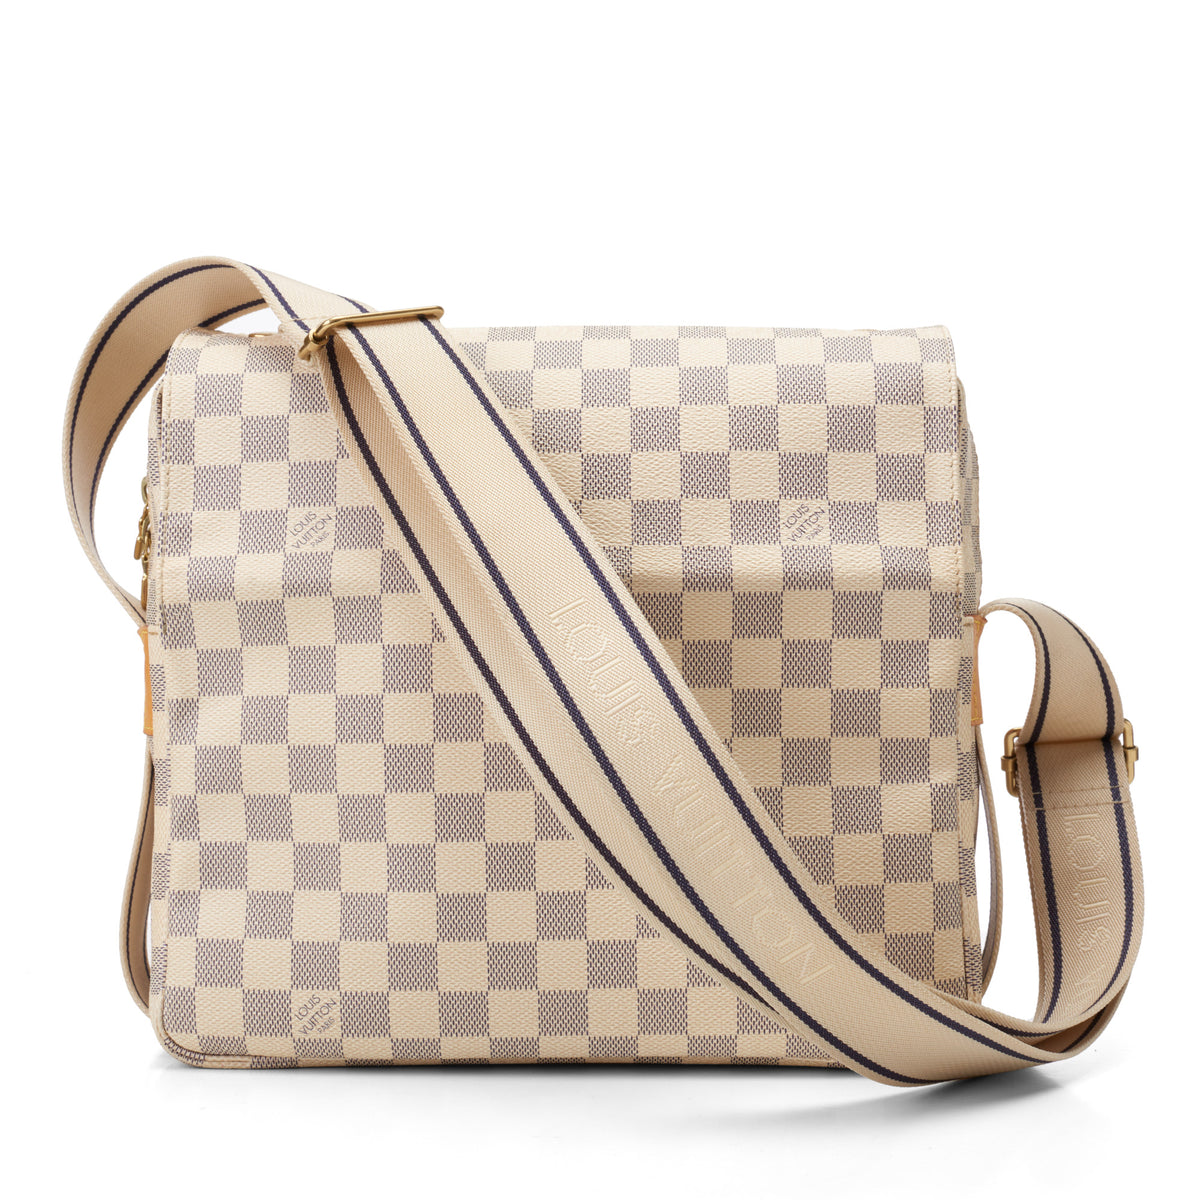 Louis vuitton damier  Handbags, Purses & Women's Bags for Sale